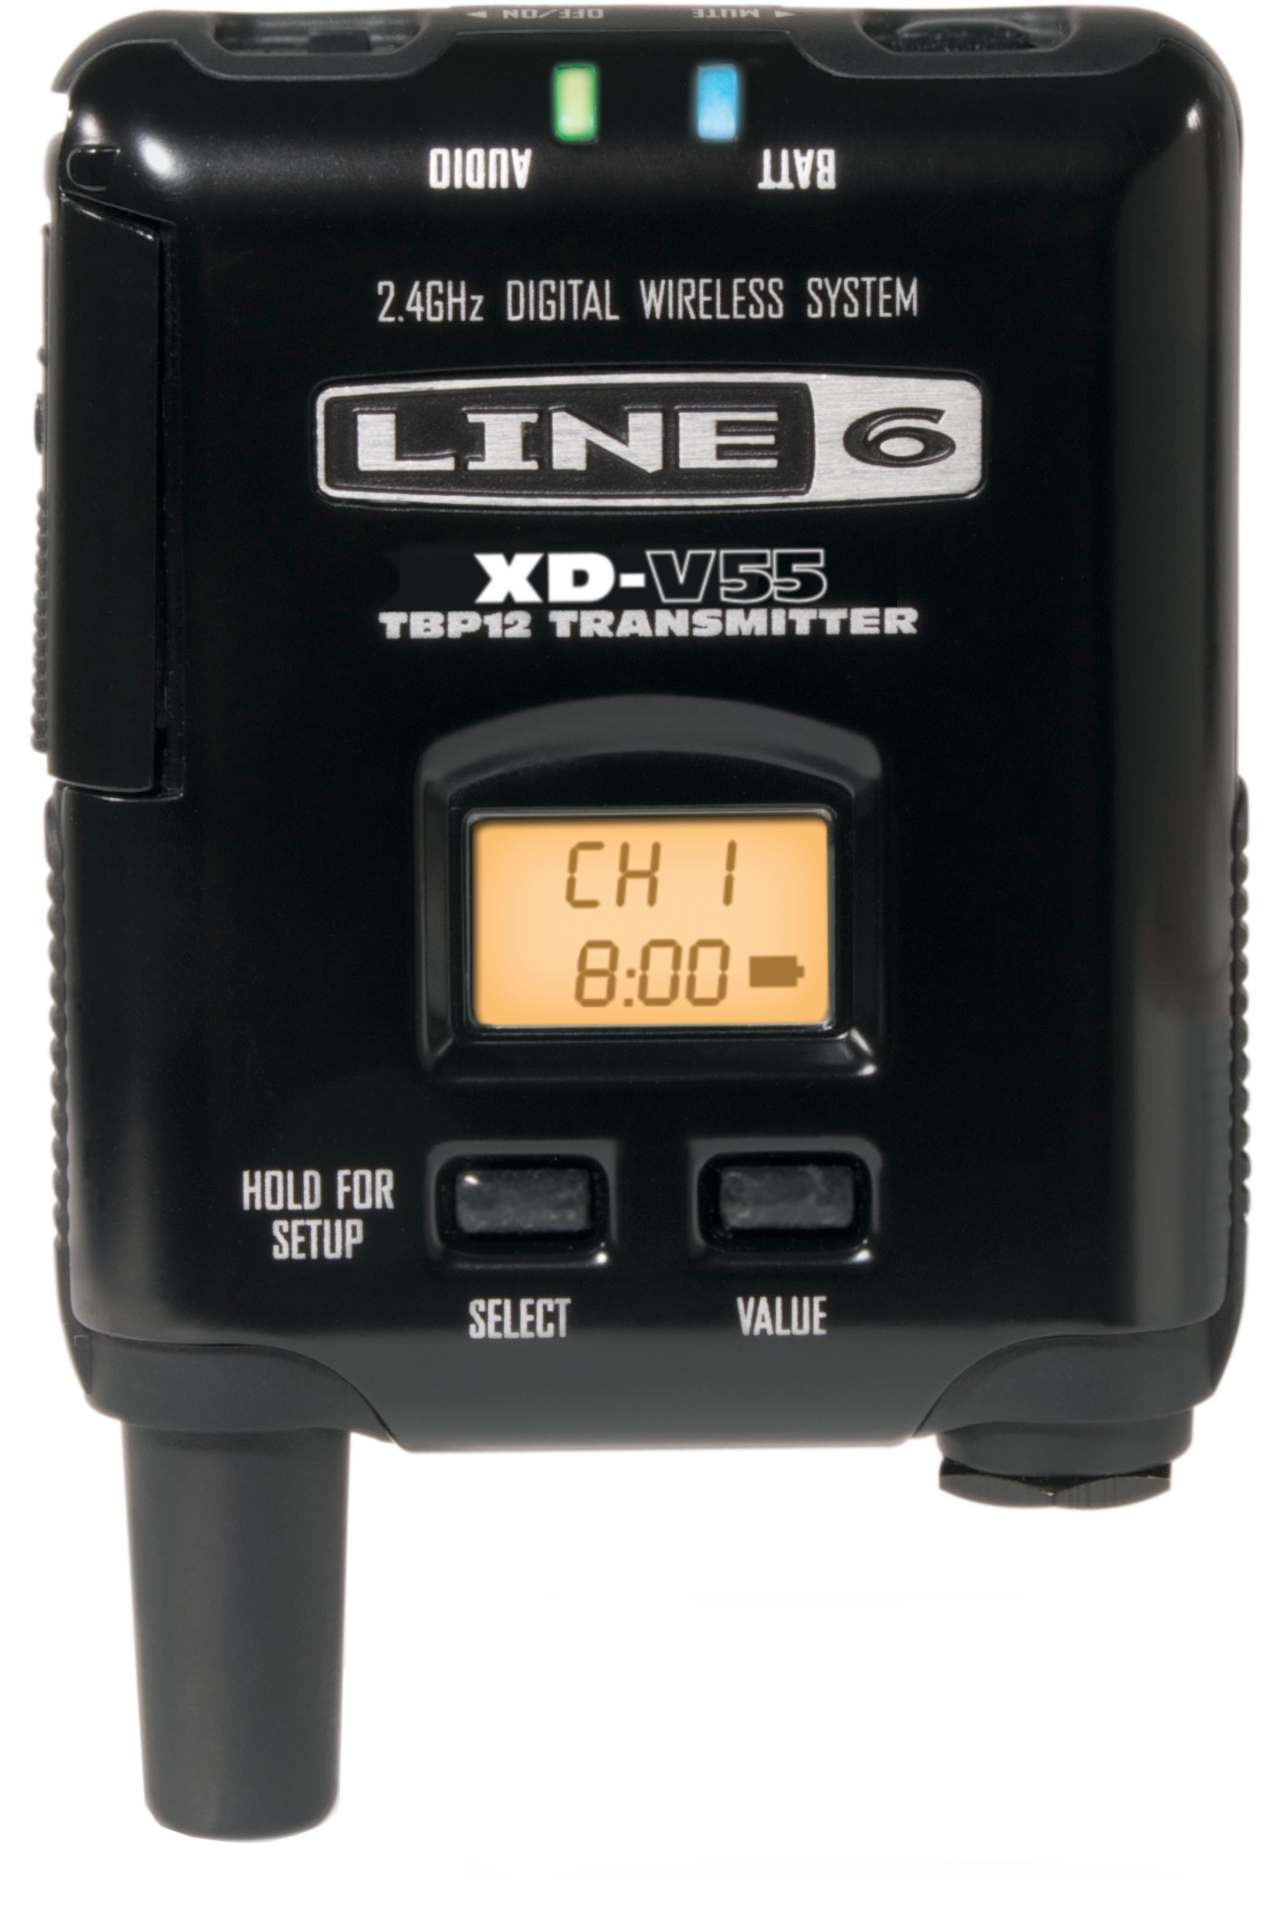 Line 6 XD-V55 BP Digital Wireless Bodypack Transmitter